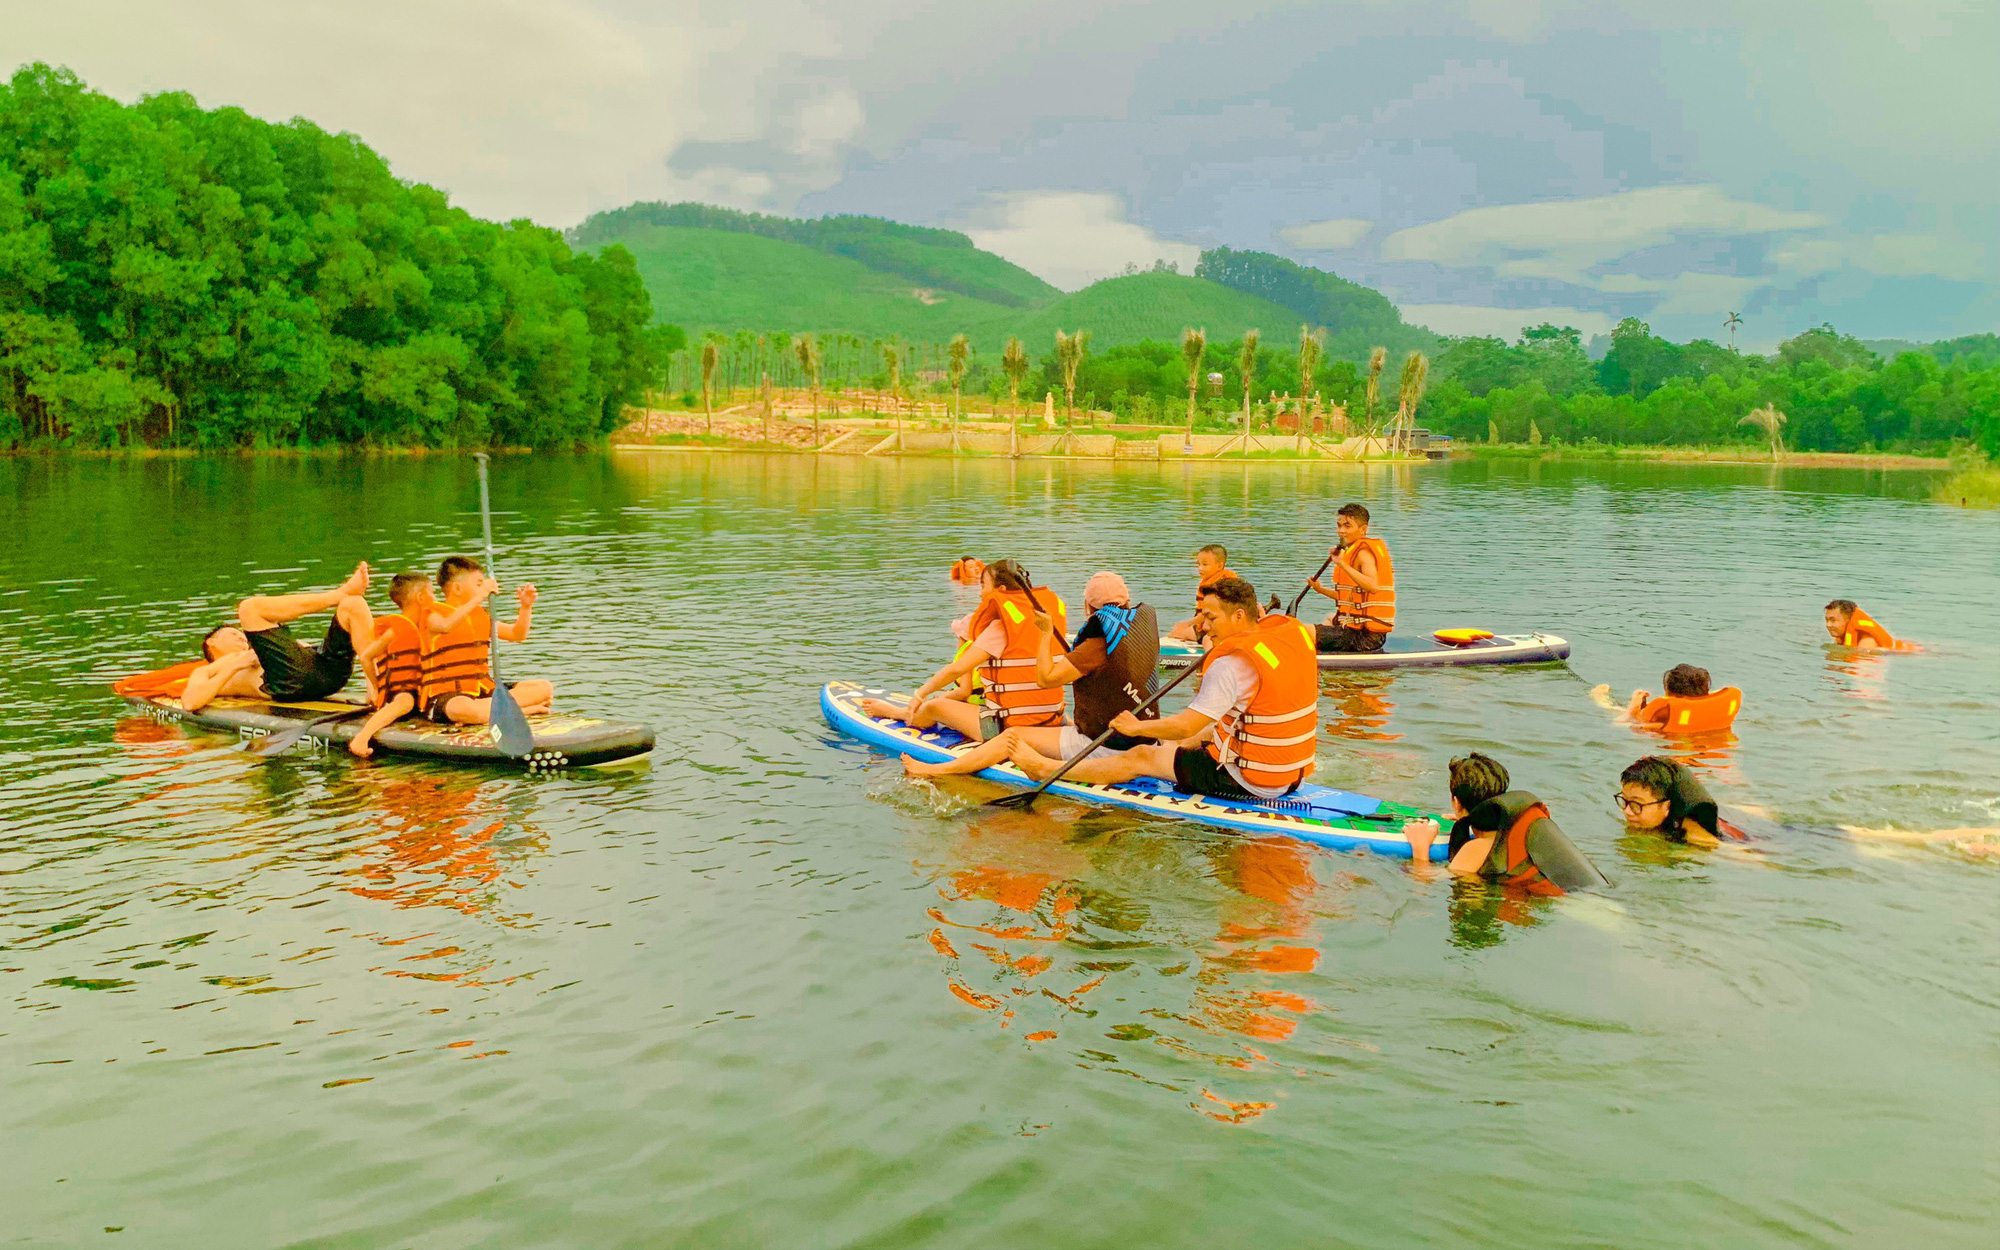 Du lịch Thái Nguyên: Hồ Ghềnh Chè đẹp như tranh vẽ, hút hồn du khách